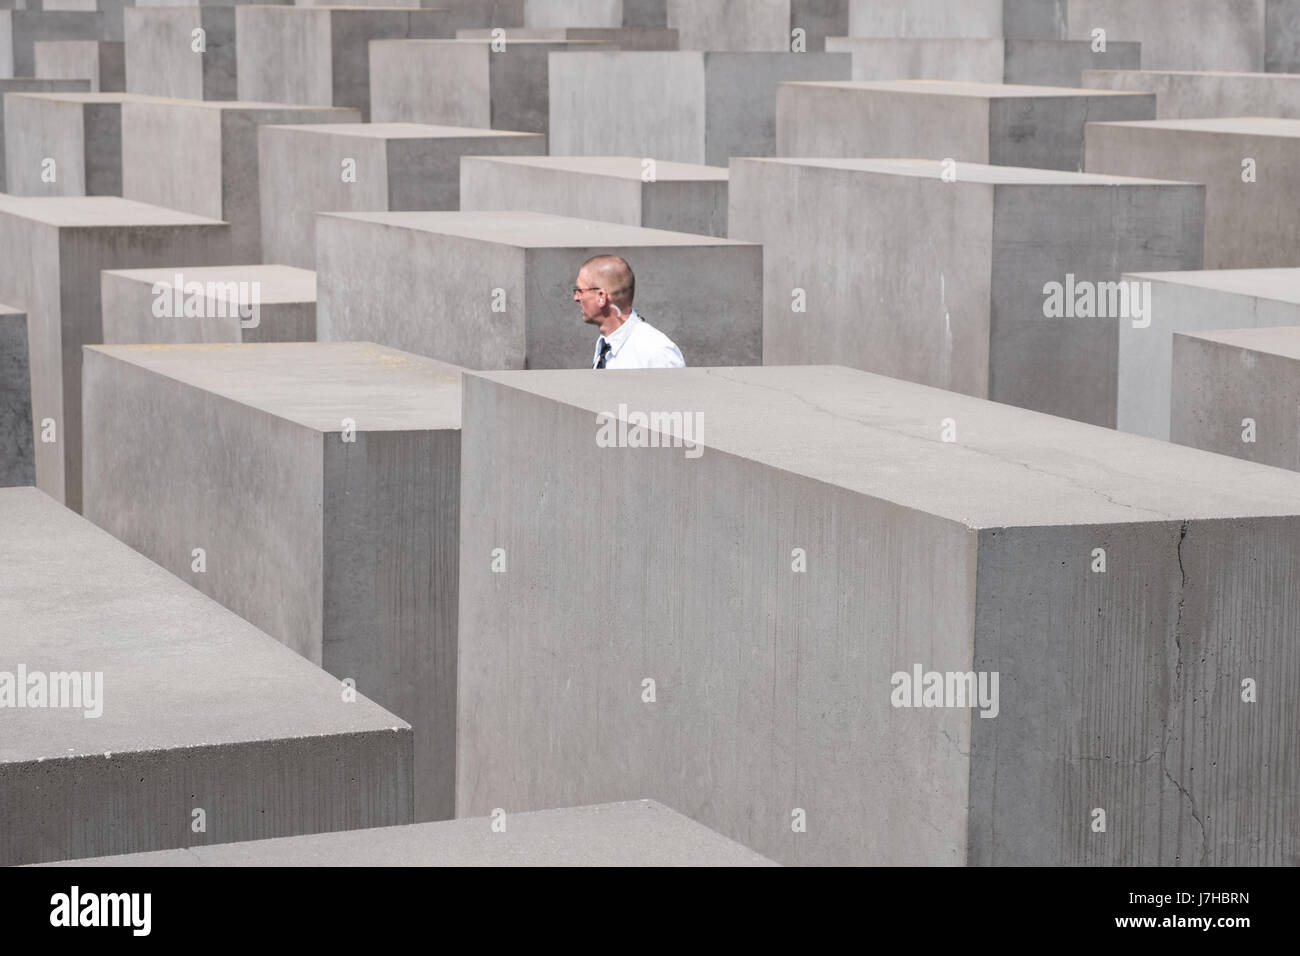 Berlino, Germania - 23 maggio 2017: guardia di sicurezza all'interno del Memoriale di ebrei uccisi in Europa anche noto come il Memoriale dell'Olocausto a Berlino. Foto Stock